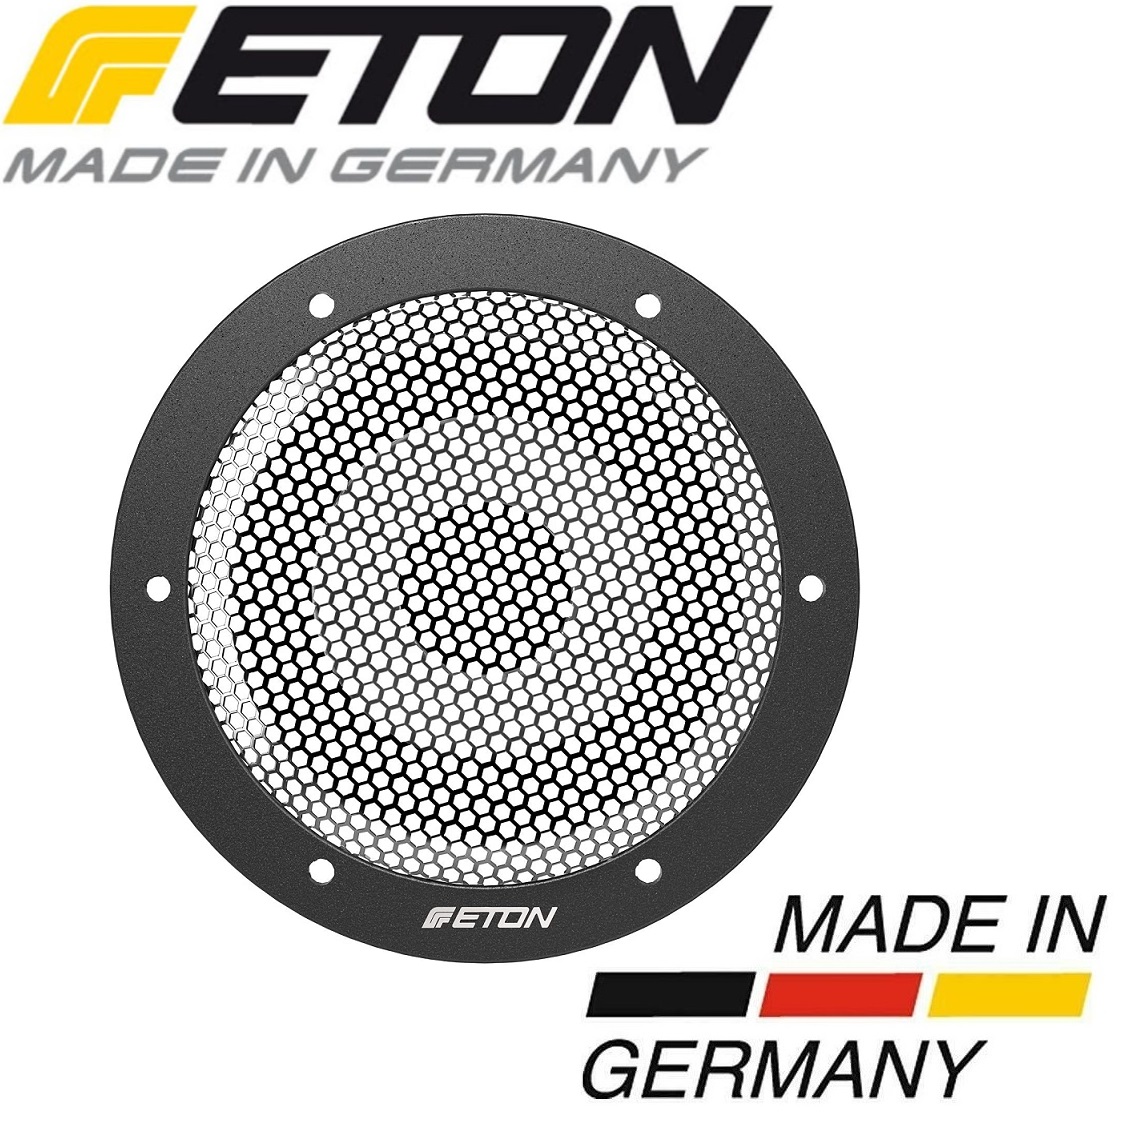 ETON GR8HG Grill Metallgitter 8cm für Eton CORE und ONYX Lautspecher - Stückpreis 